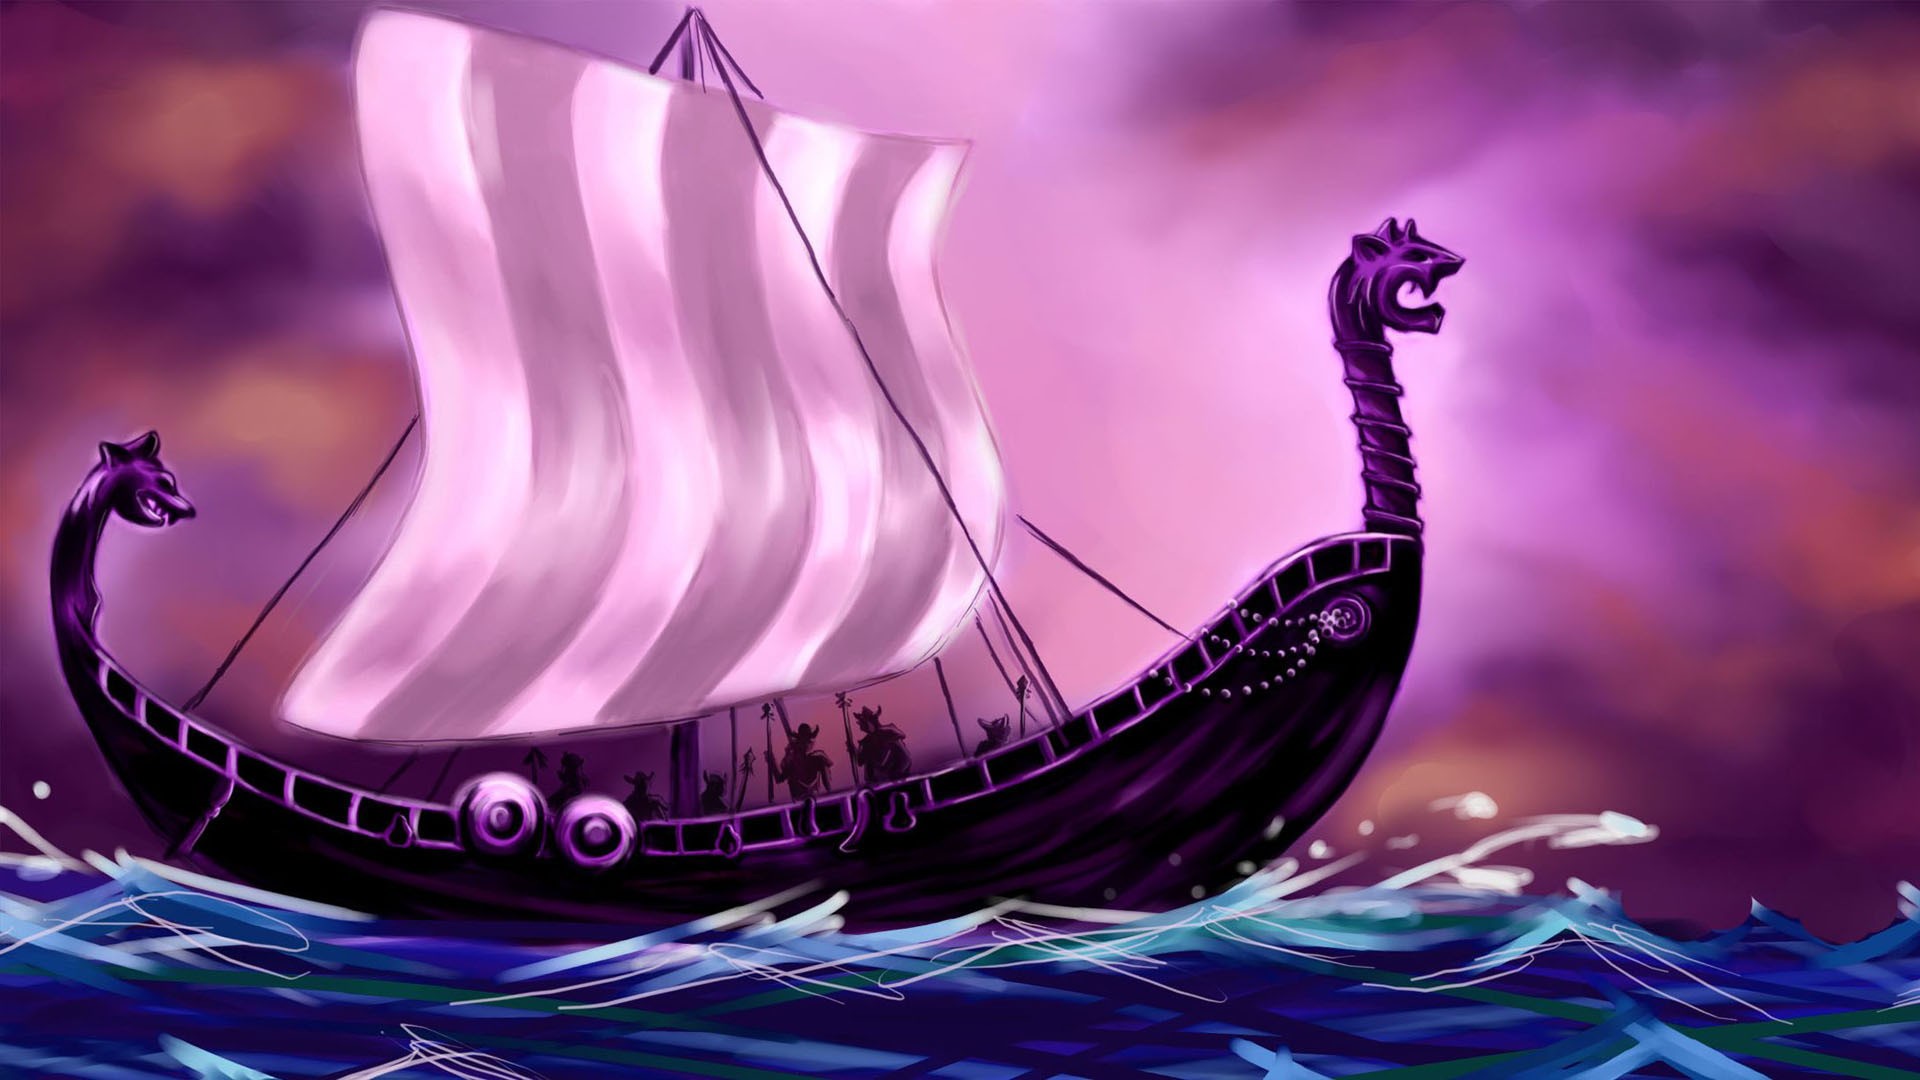 General 1920x1080 Vikings fantasy art artwork boat pink